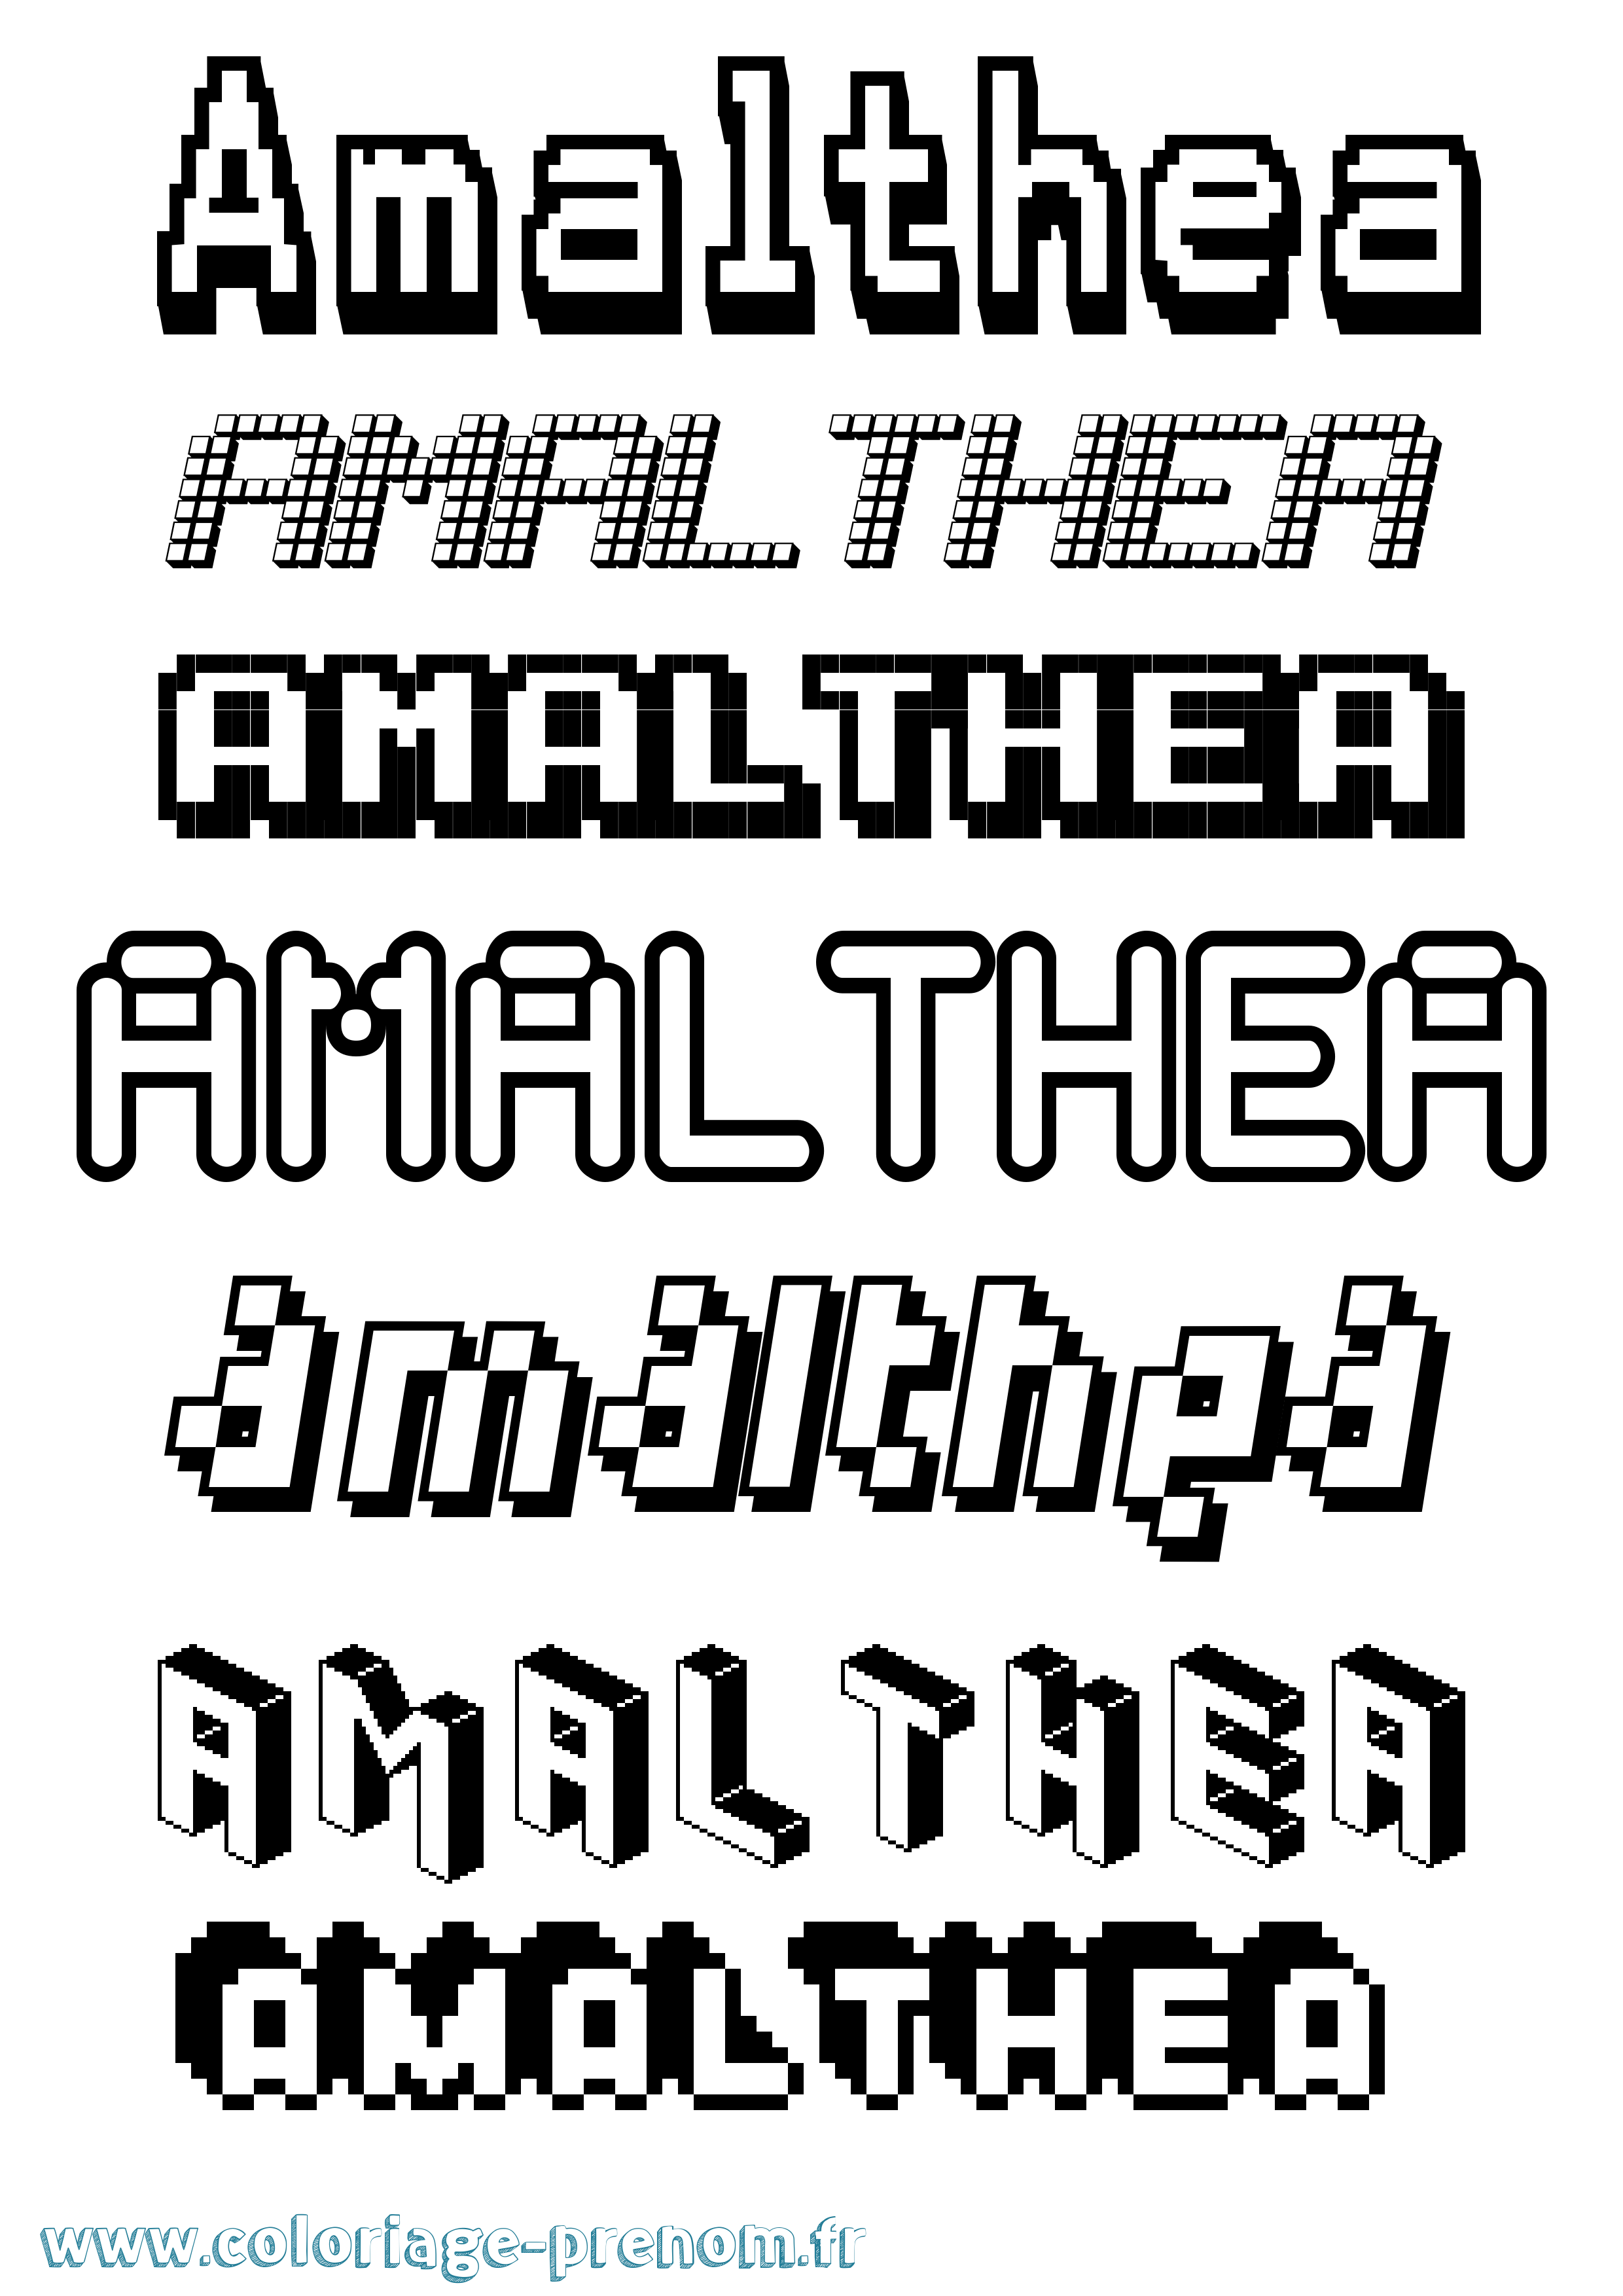 Coloriage prénom Amalthea Pixel